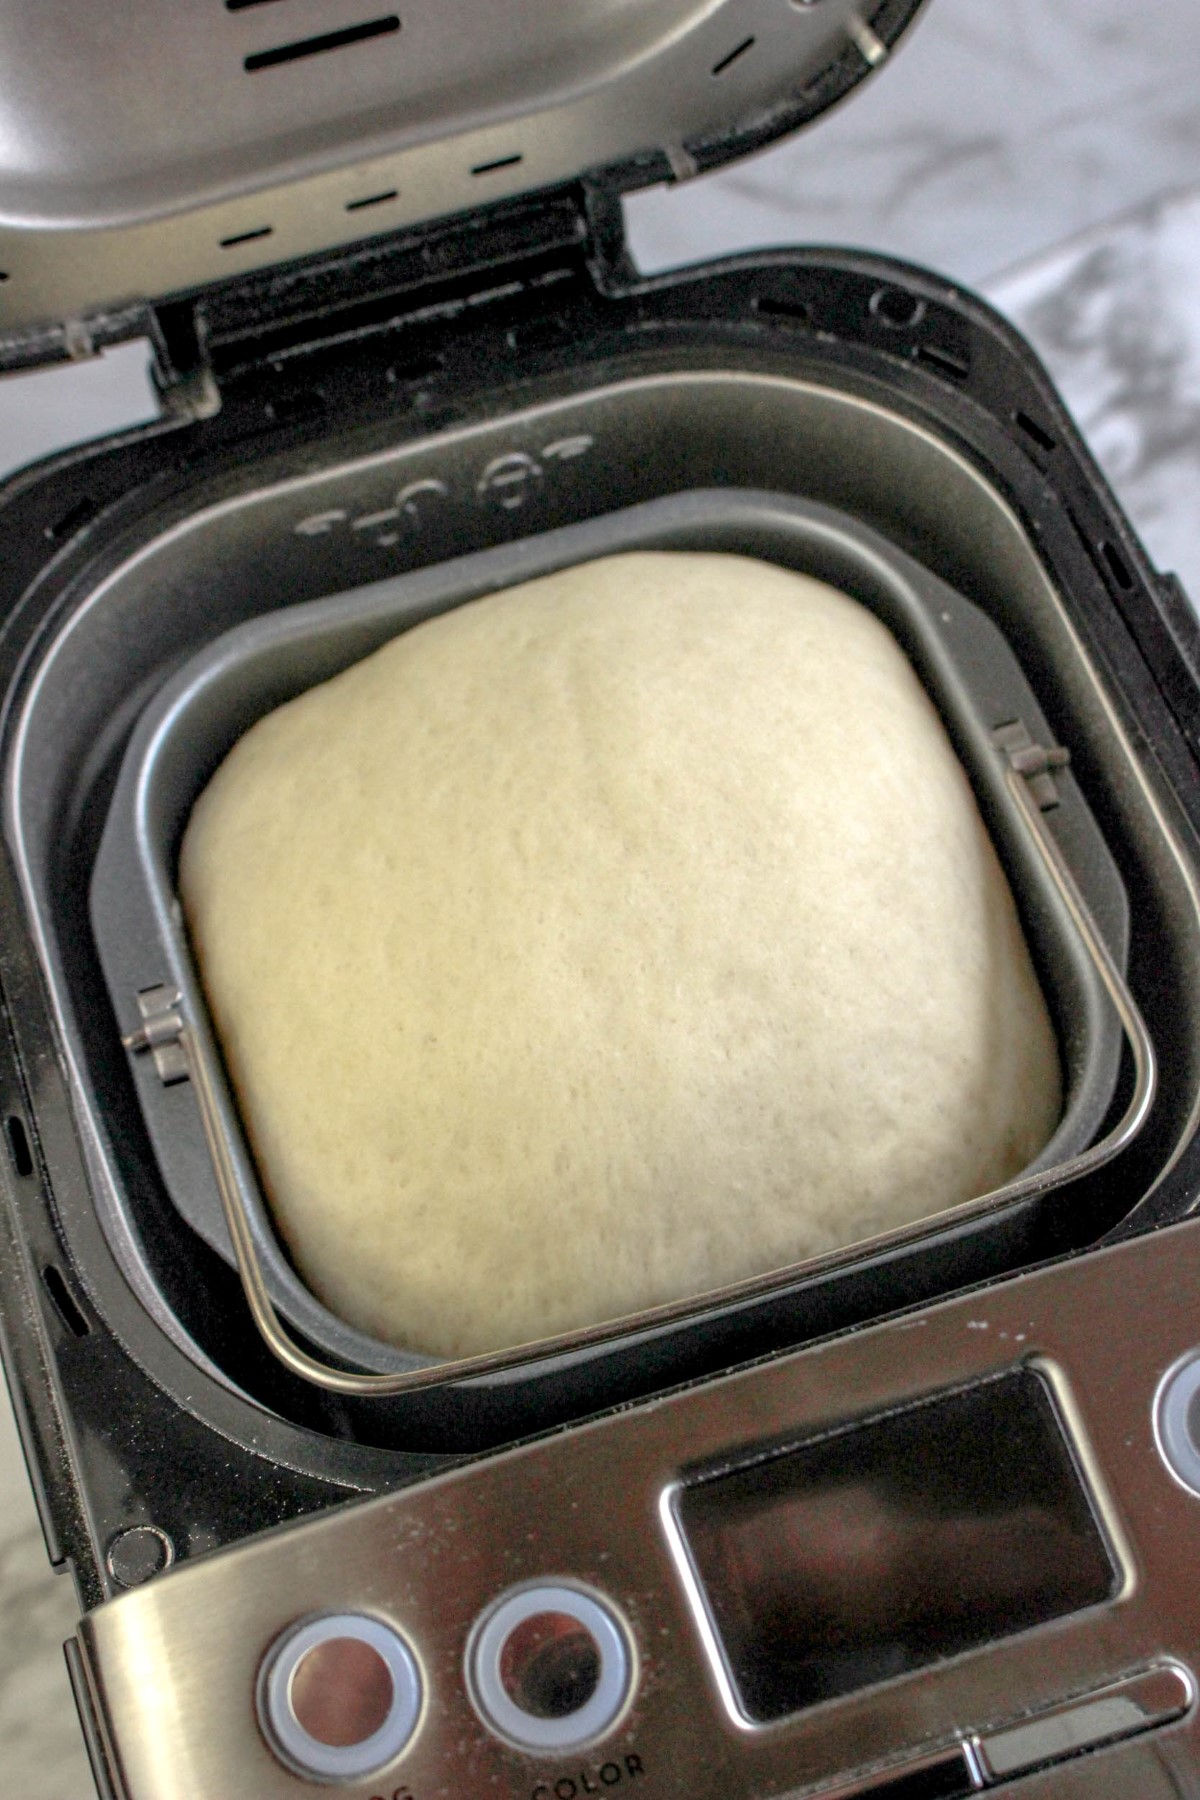 Bread machine pizza dough in the bread machine